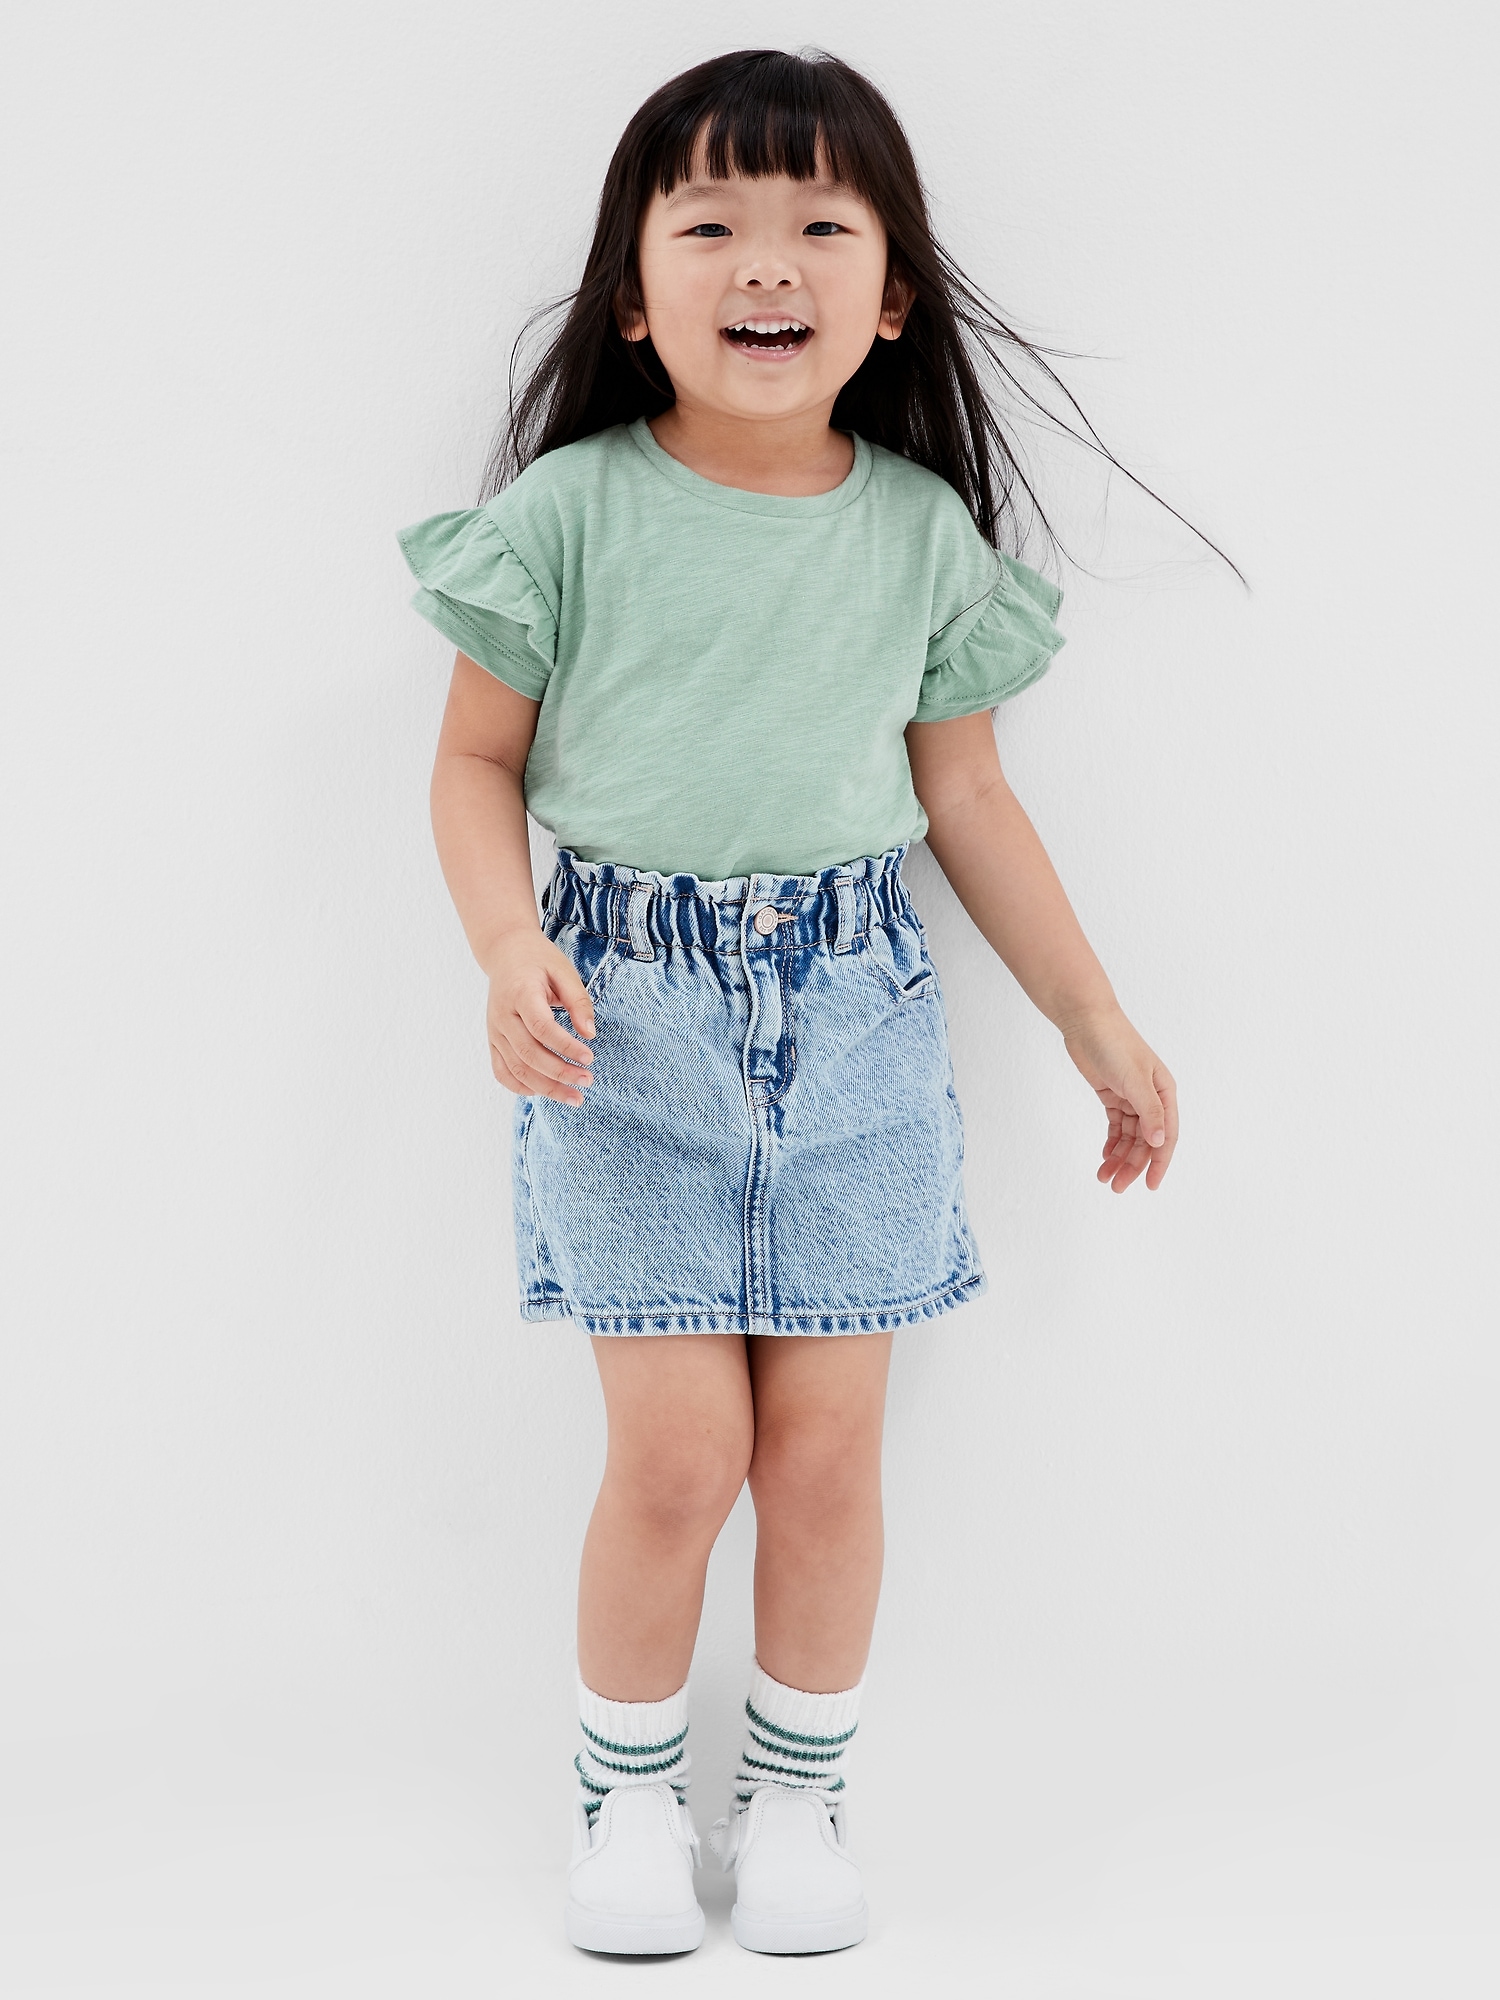 Summer Toddler Kids Baby Girls Clothes Crop Tops Denim Skirt Dress Outfit  Set Blue 2-3 Years - Walmart.com